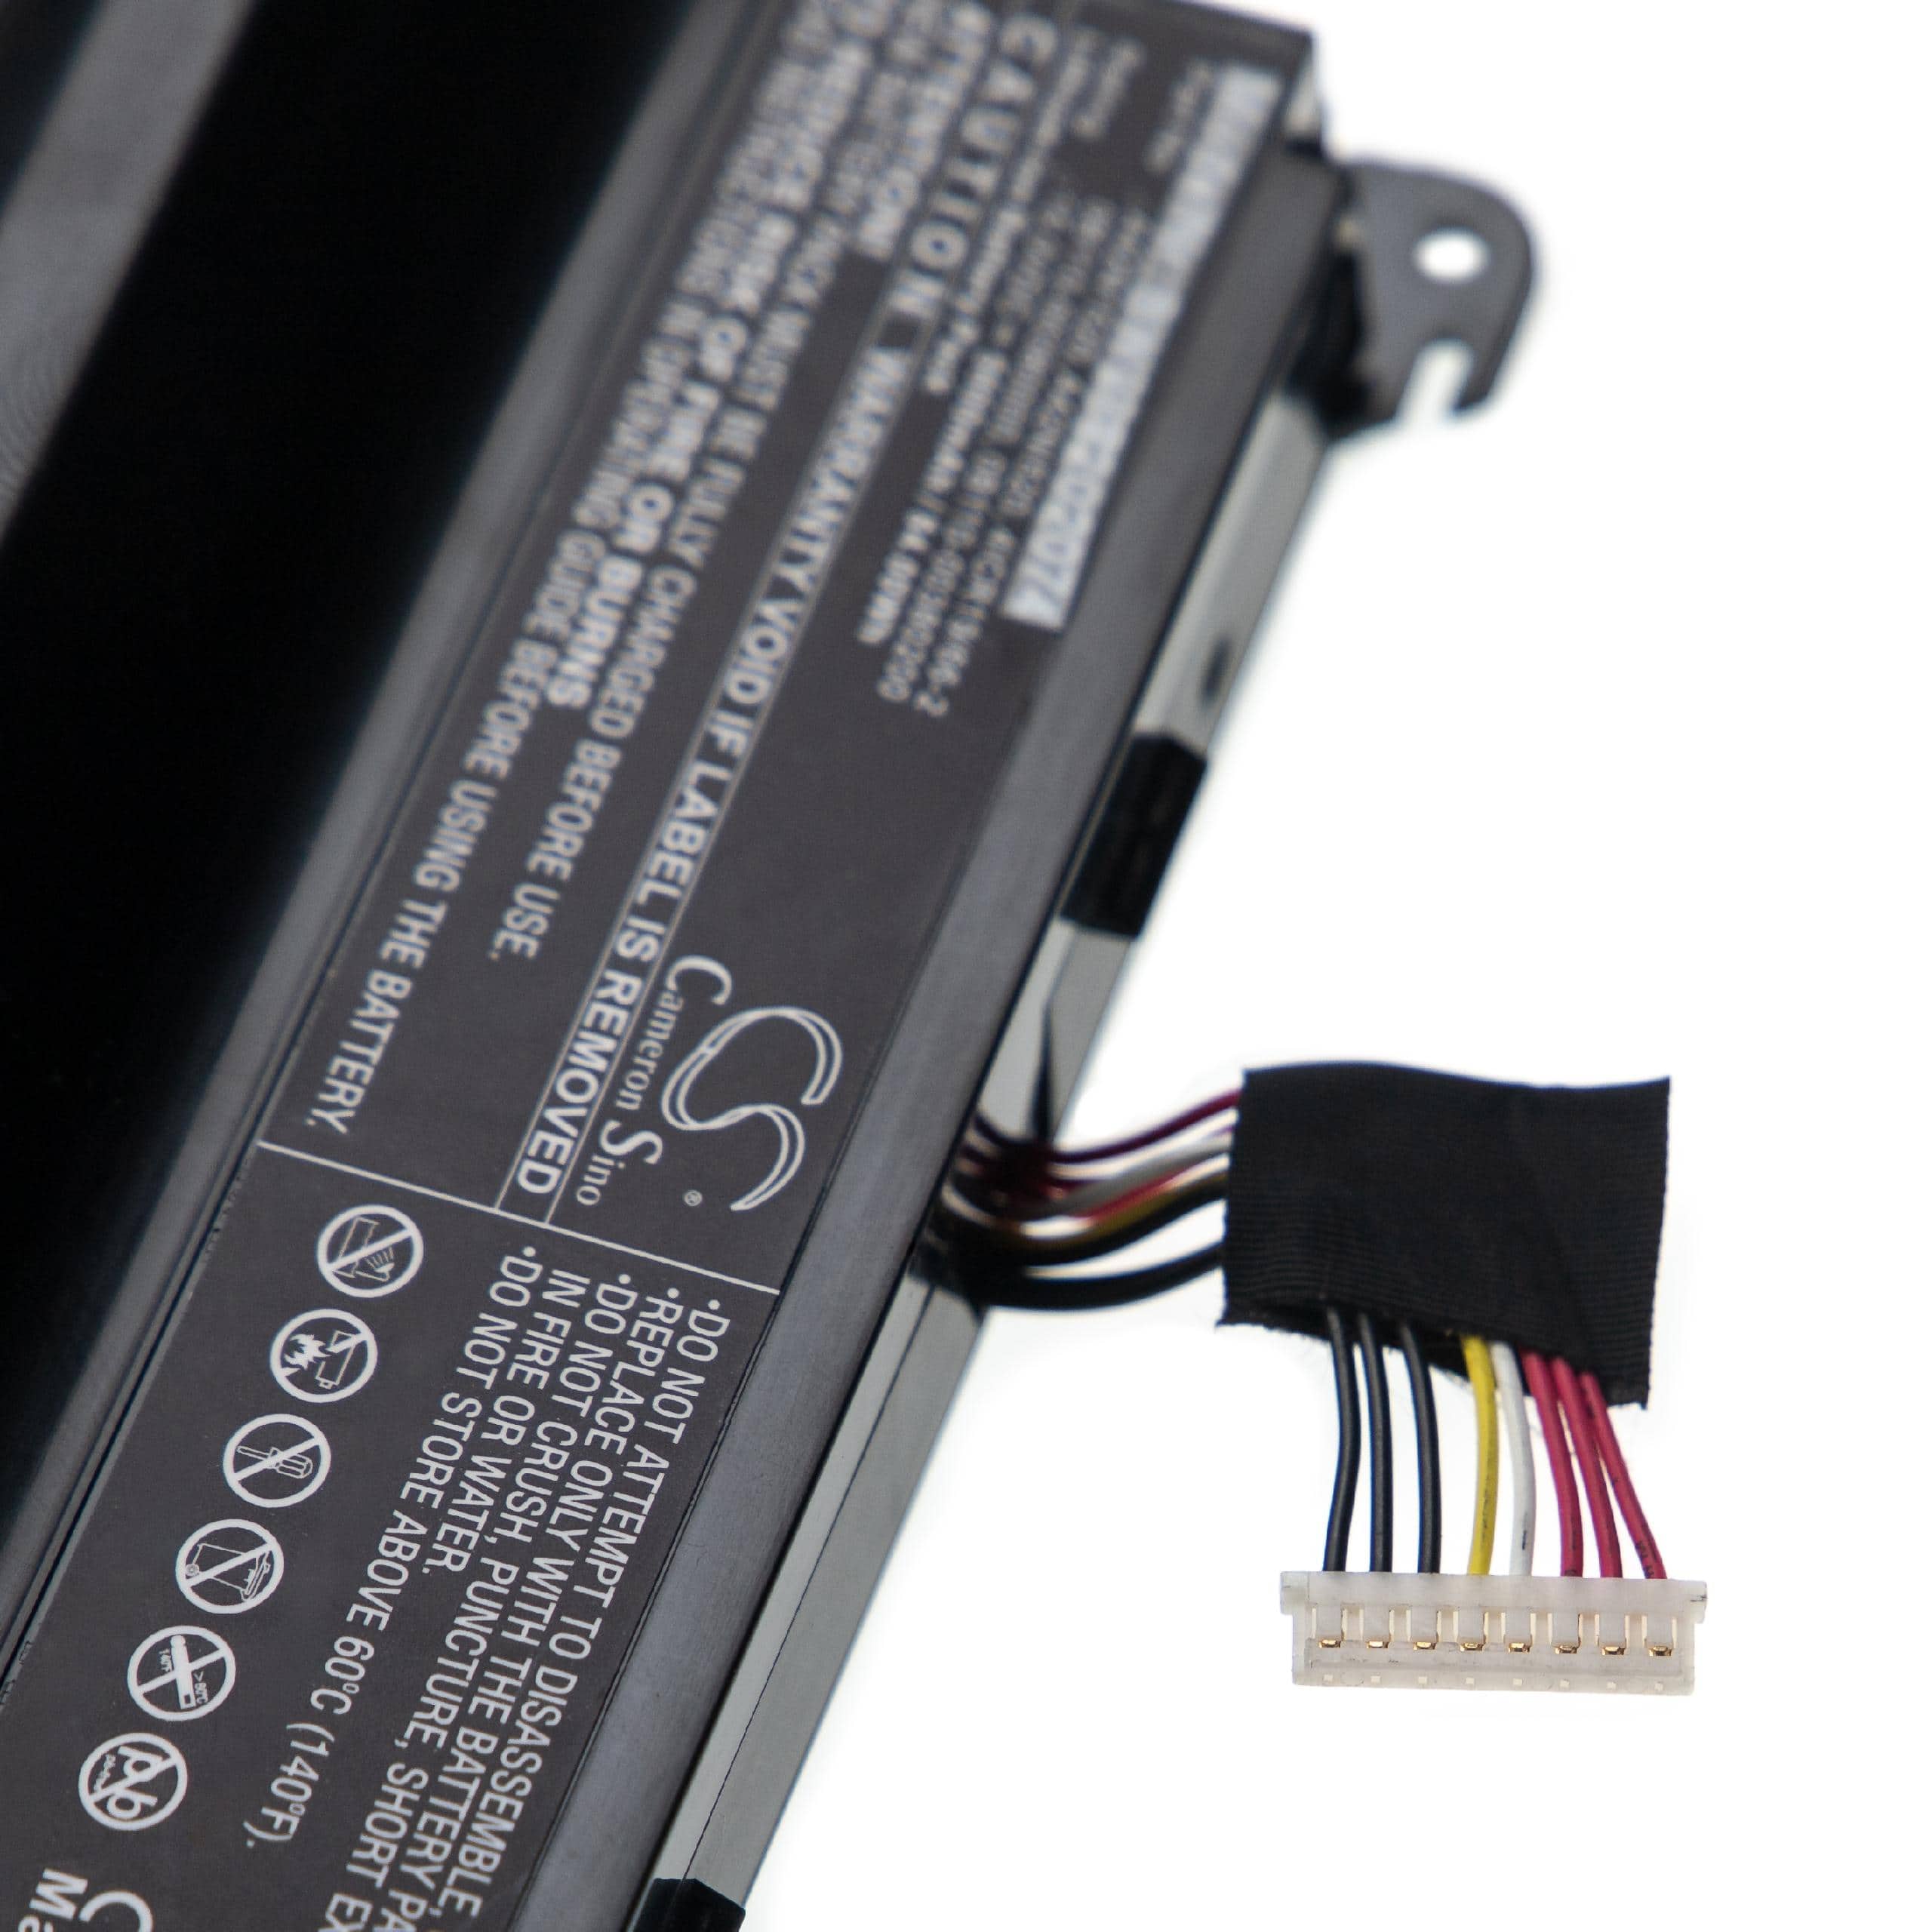 Batterie remplace Asus 0B110-00380200, 0B110-00380000 pour ordinateur portable - 5600mAh 15V Li-ion, noir